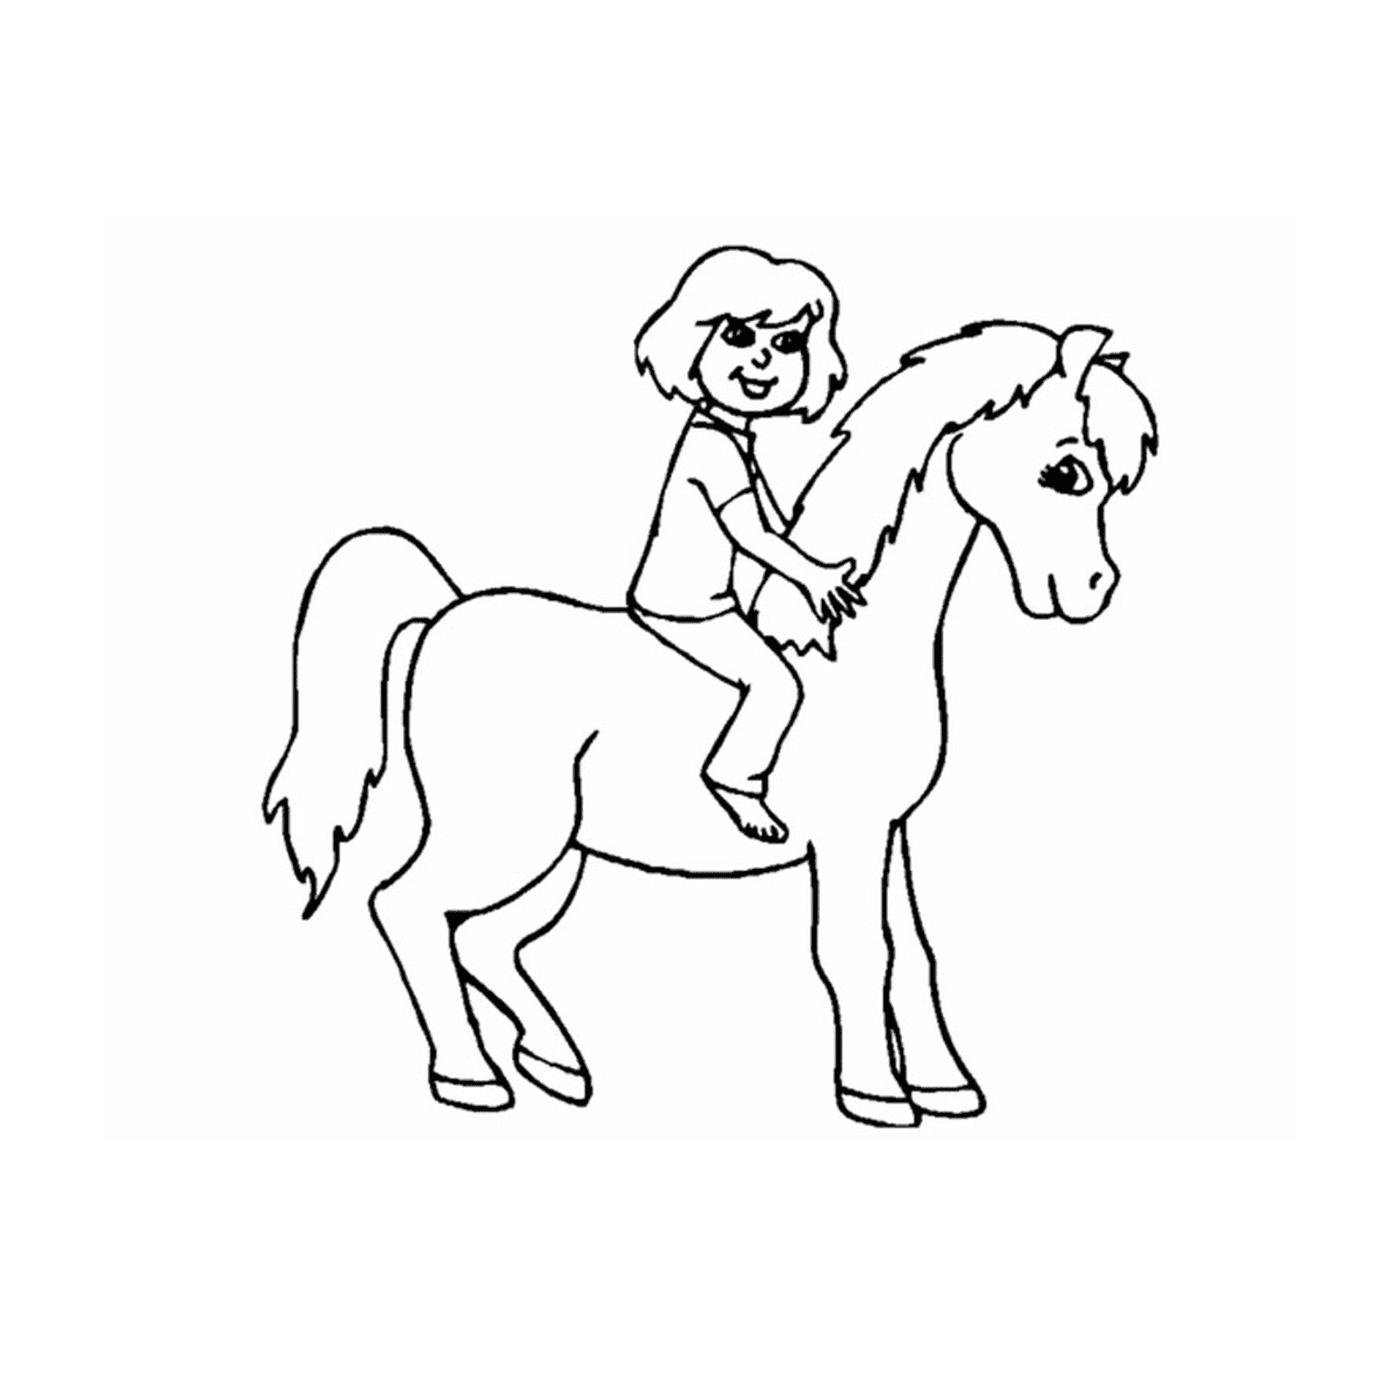  girl riding horse 